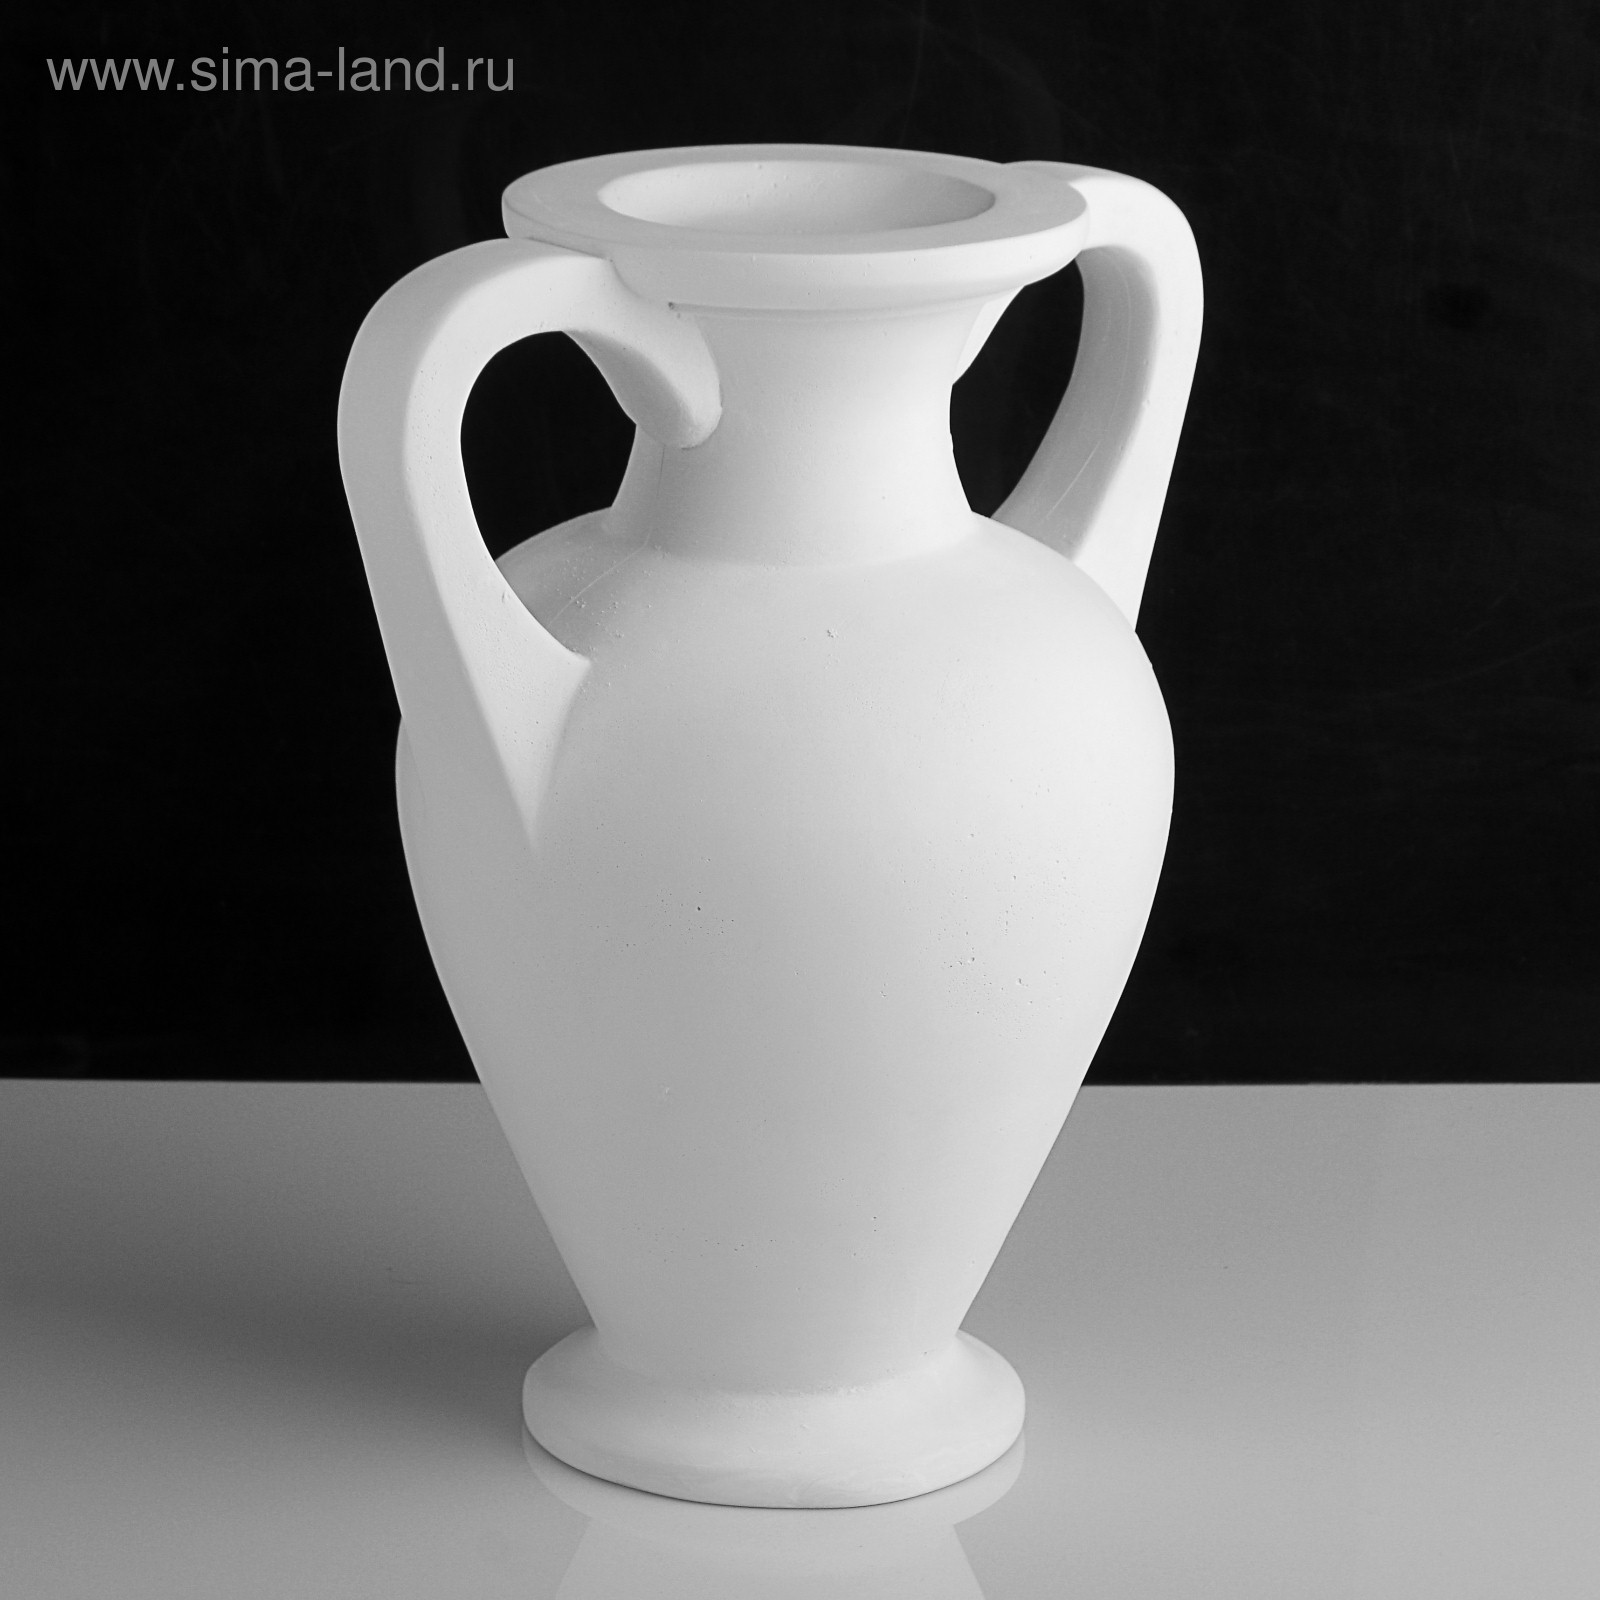 Гипсовая фигура ваза: амфора, 34 х 28,5 х 21 см (50-555) - Купить по цене  от 1 343.00 руб. | Интернет магазин SIMA-LAND.RU